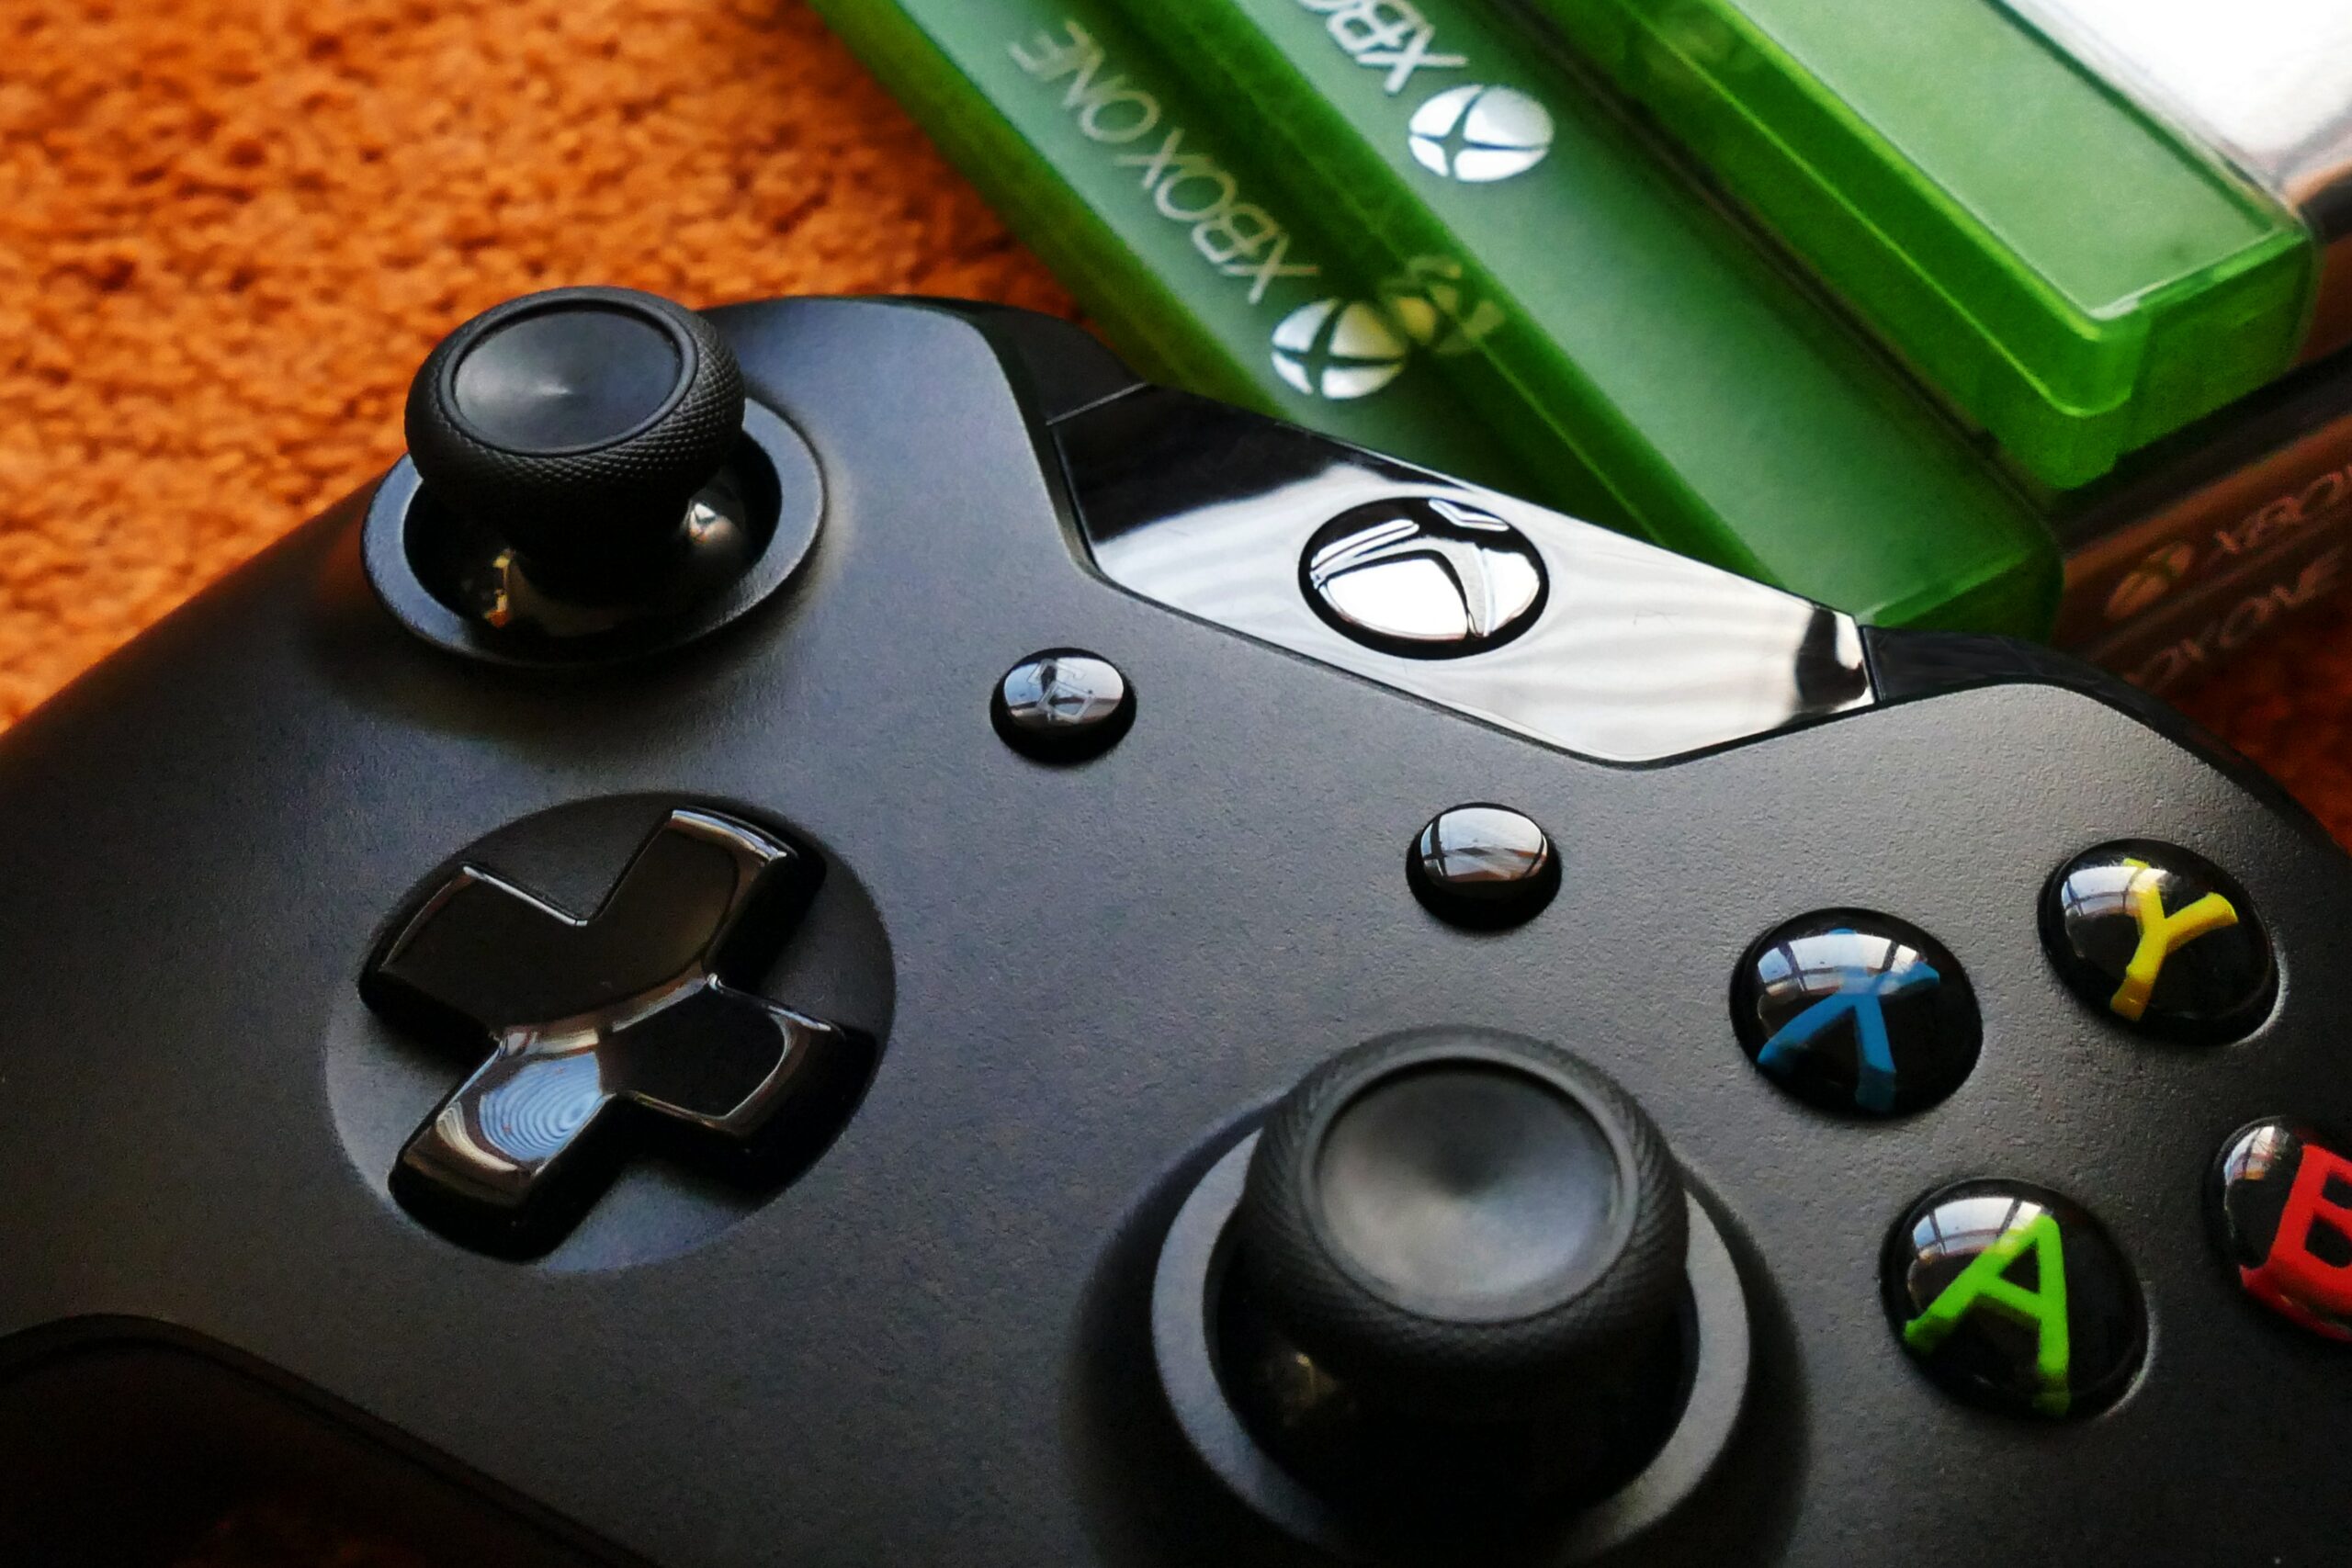 Xbox lança de surpresa o “Hi-Fi Rush”, jogo exclusivo de ação e